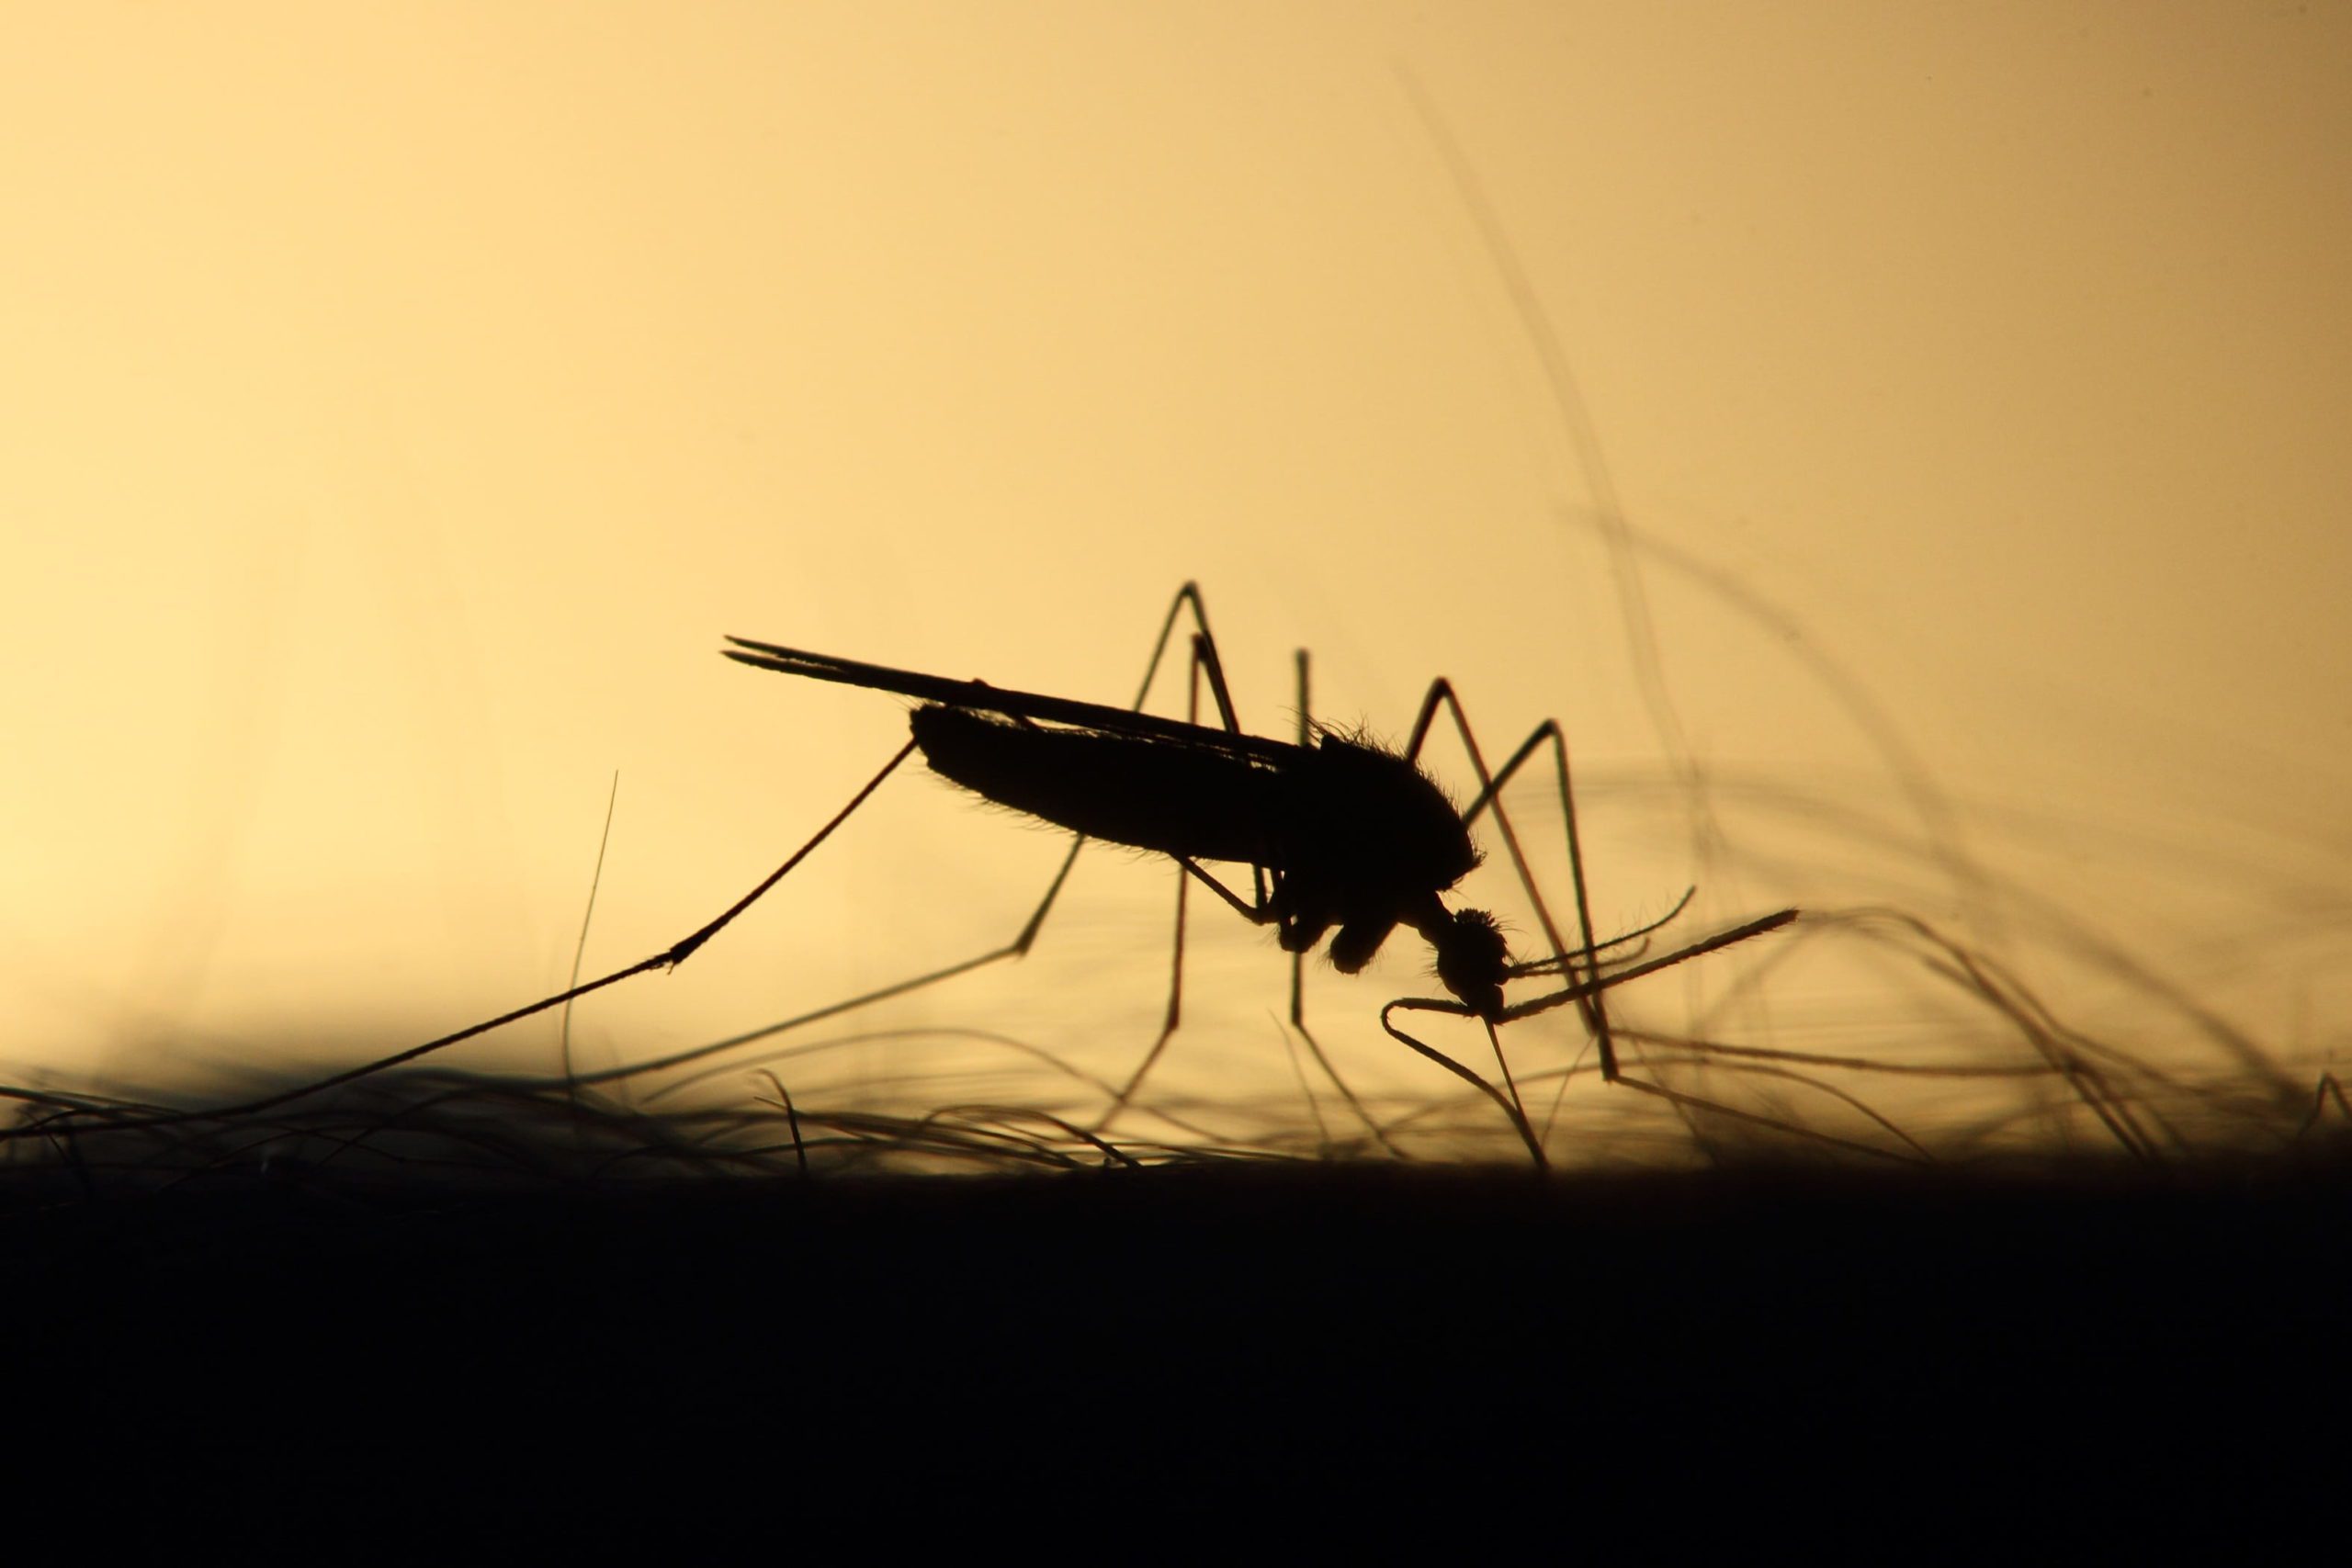 Zzapp Malaria s’attaque au problème du paludisme en Afrique